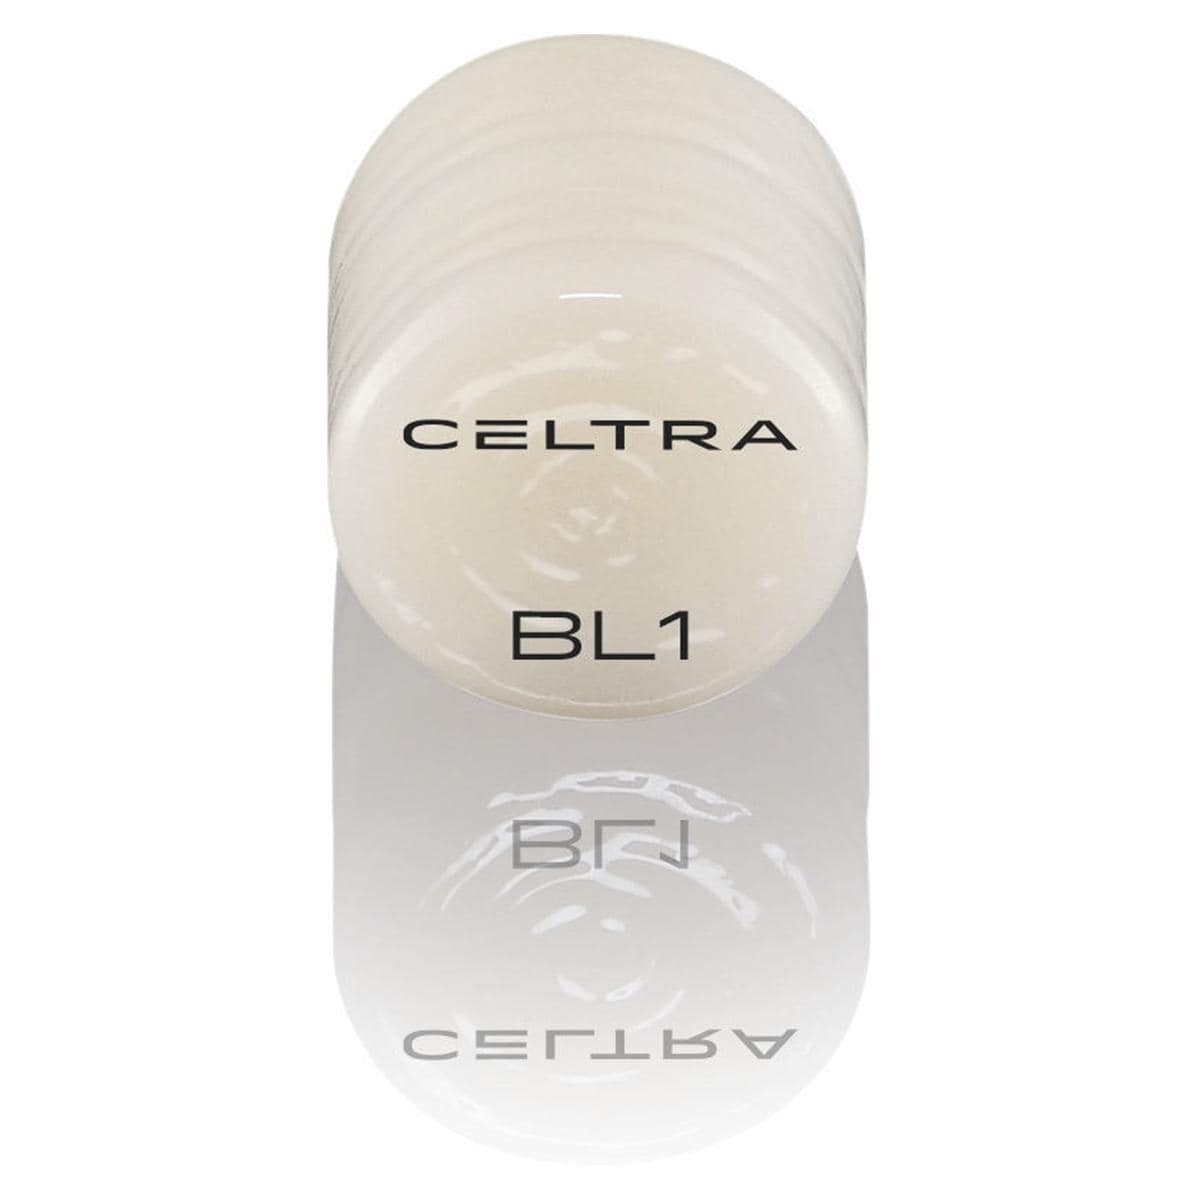 CELTRA® Press LT/MT Bleach - BL1, Packung 3 x 6 g